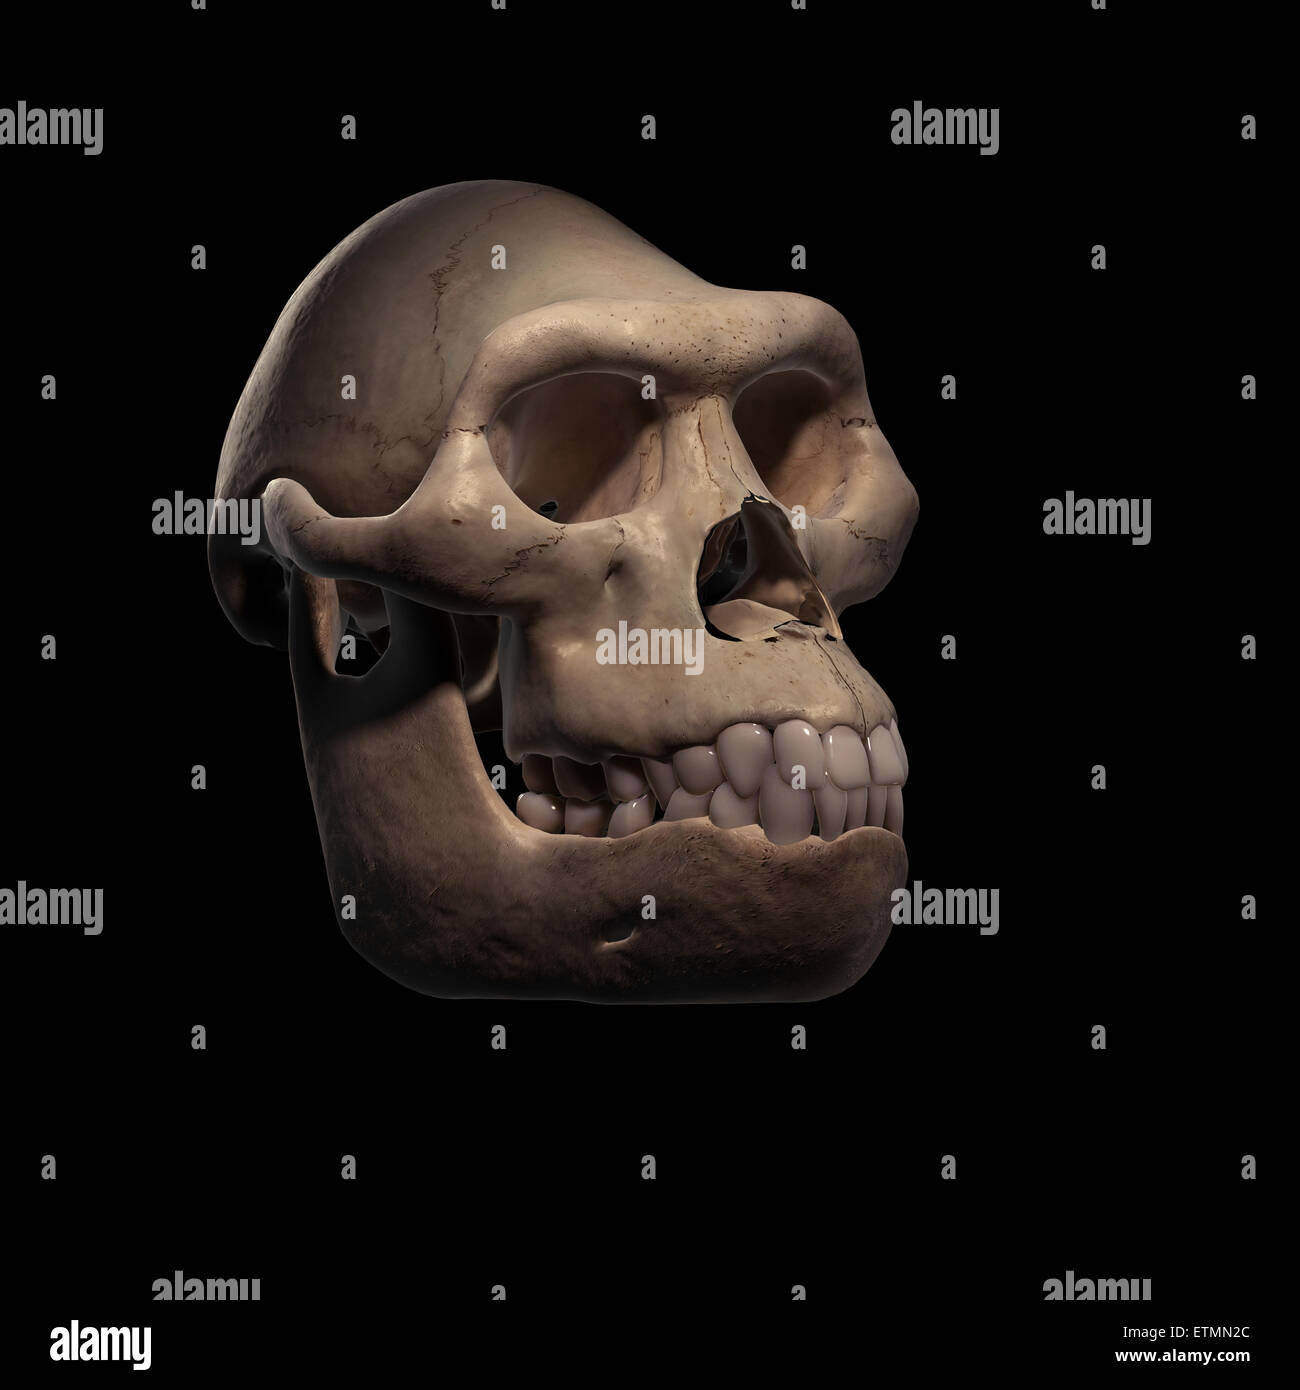 Illustrazione di un cranio Australopithecus. Australopithecus è un genere estinto di ominidi e inizio antenato di Homo Sapiens. Foto Stock